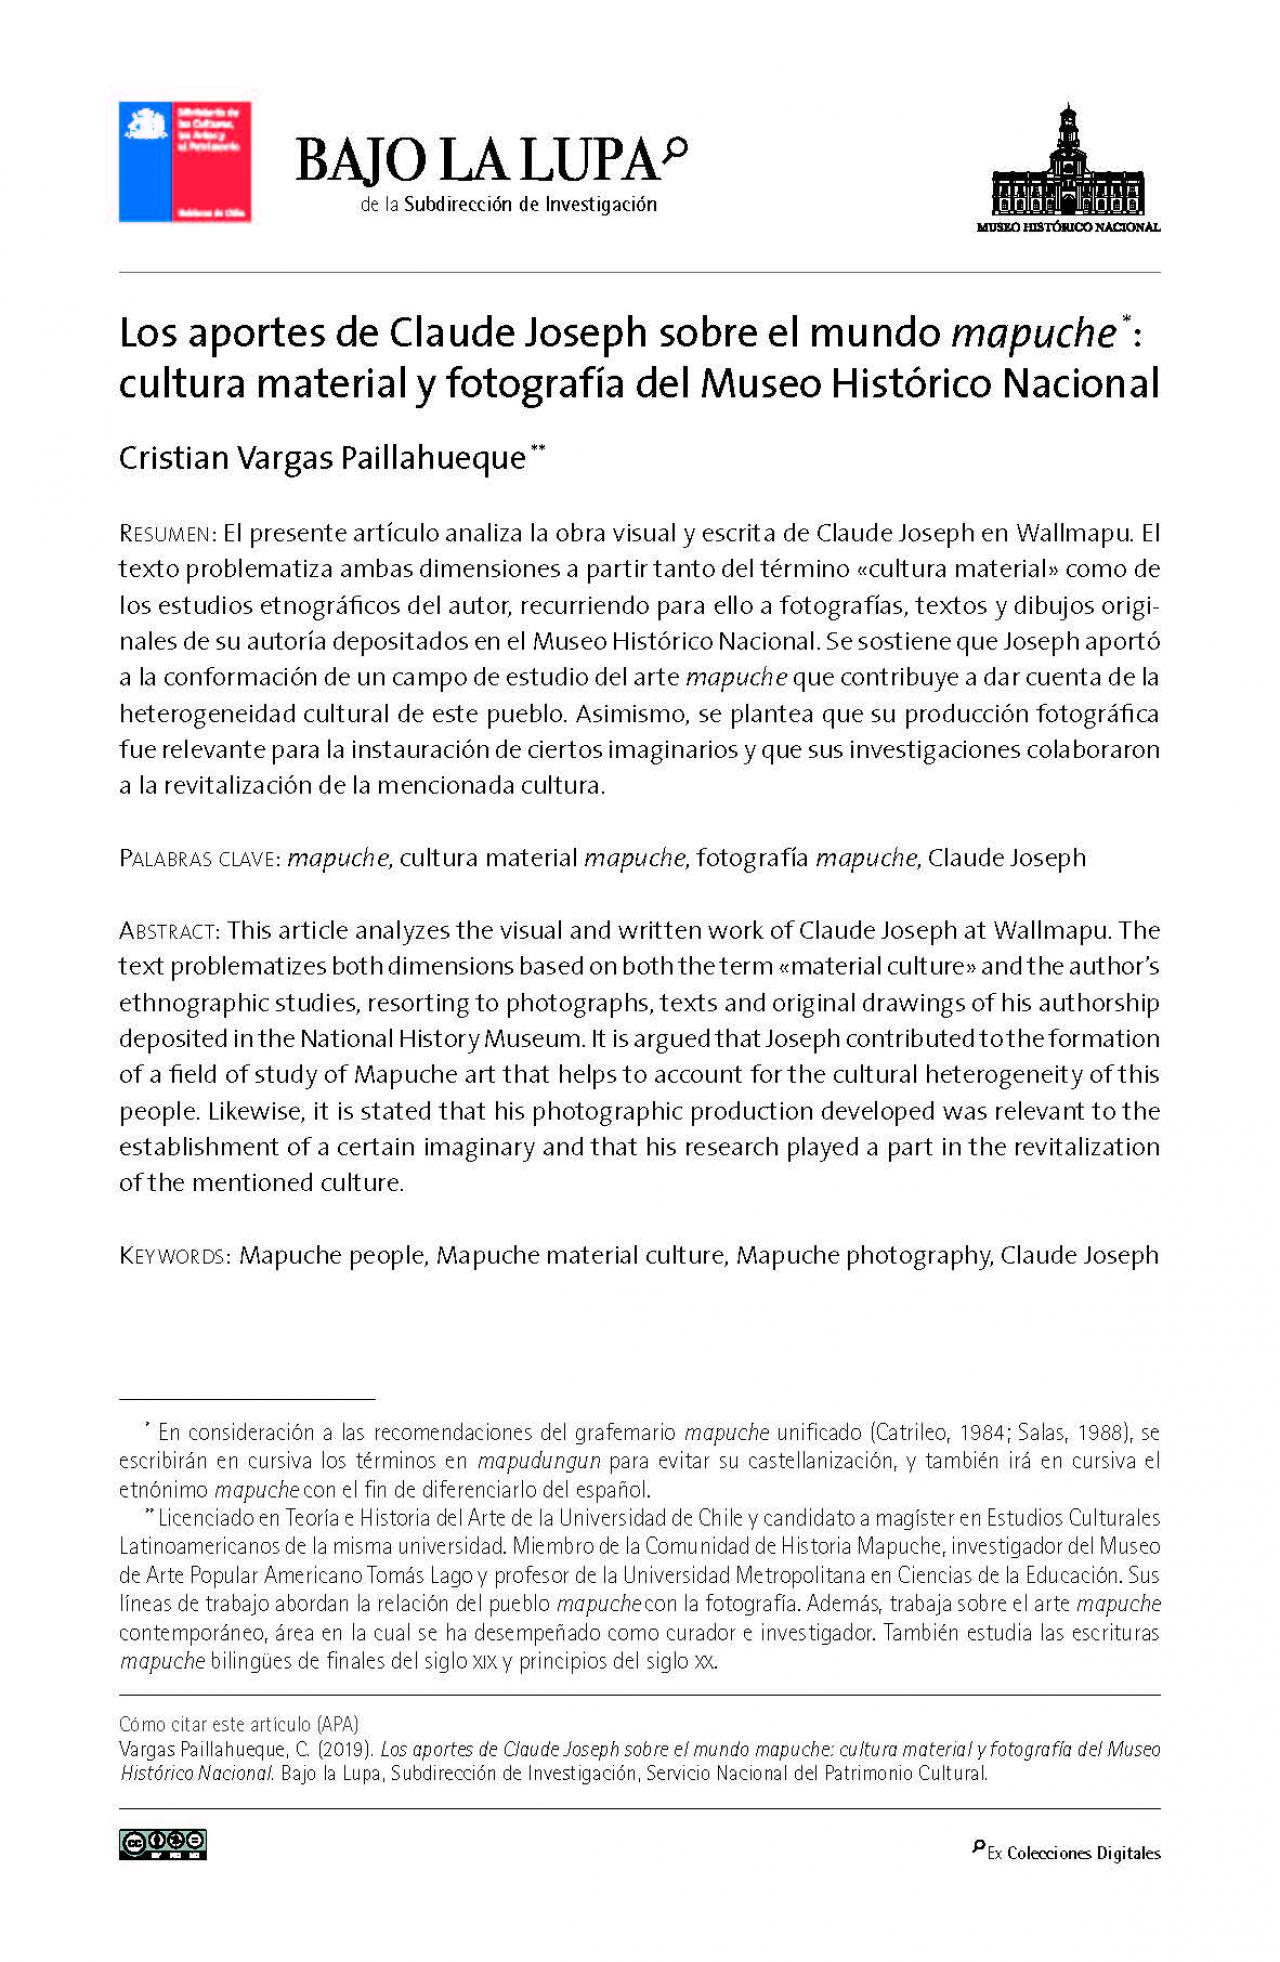 Los aportes de Claude Joseph sobre el mundo mapuche - cultura material y fotografía del Museo Histórico Nacional